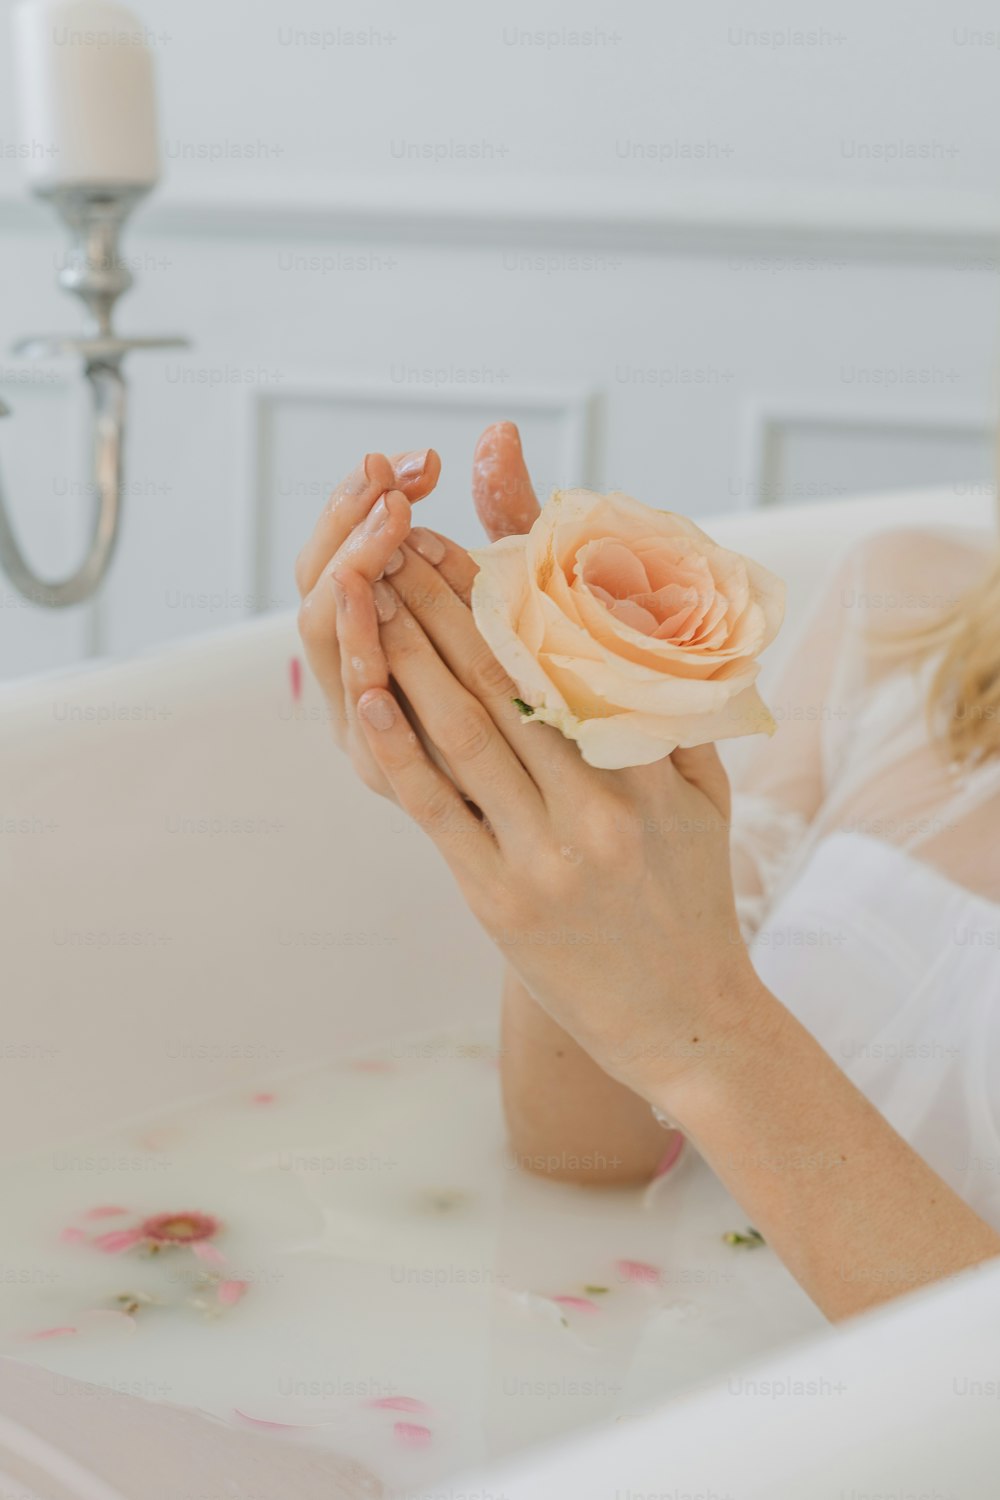 a woman sitting in a bathtub holding a flower